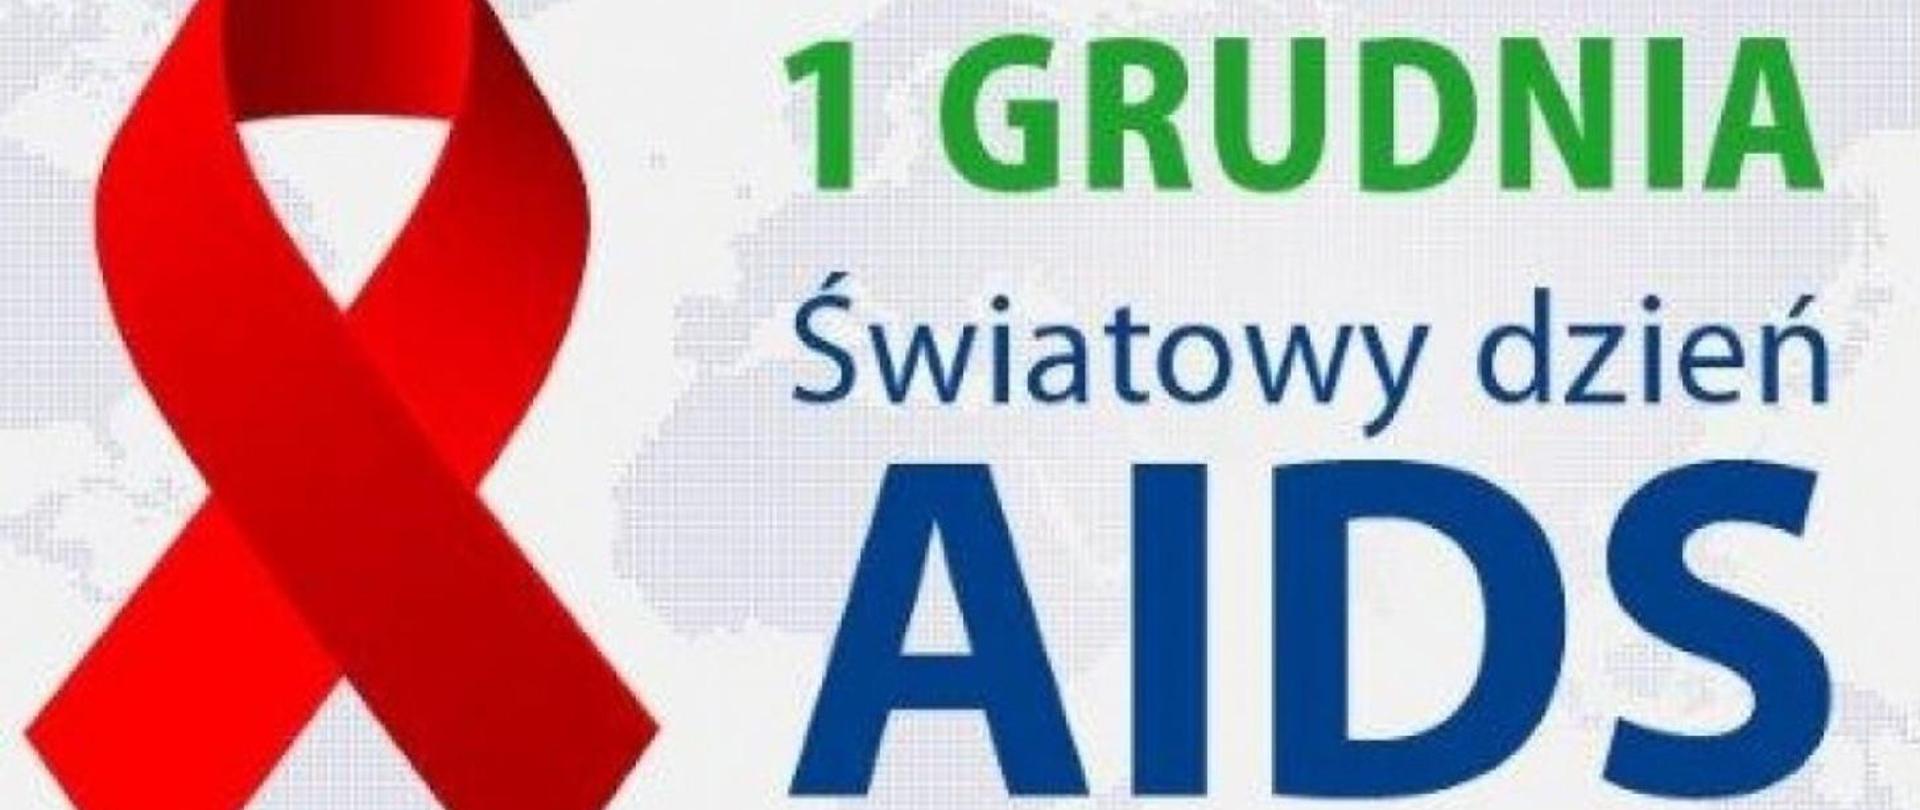 Czerwona wstążka i kolorowy napis 1 grudnia światowy dzień aids